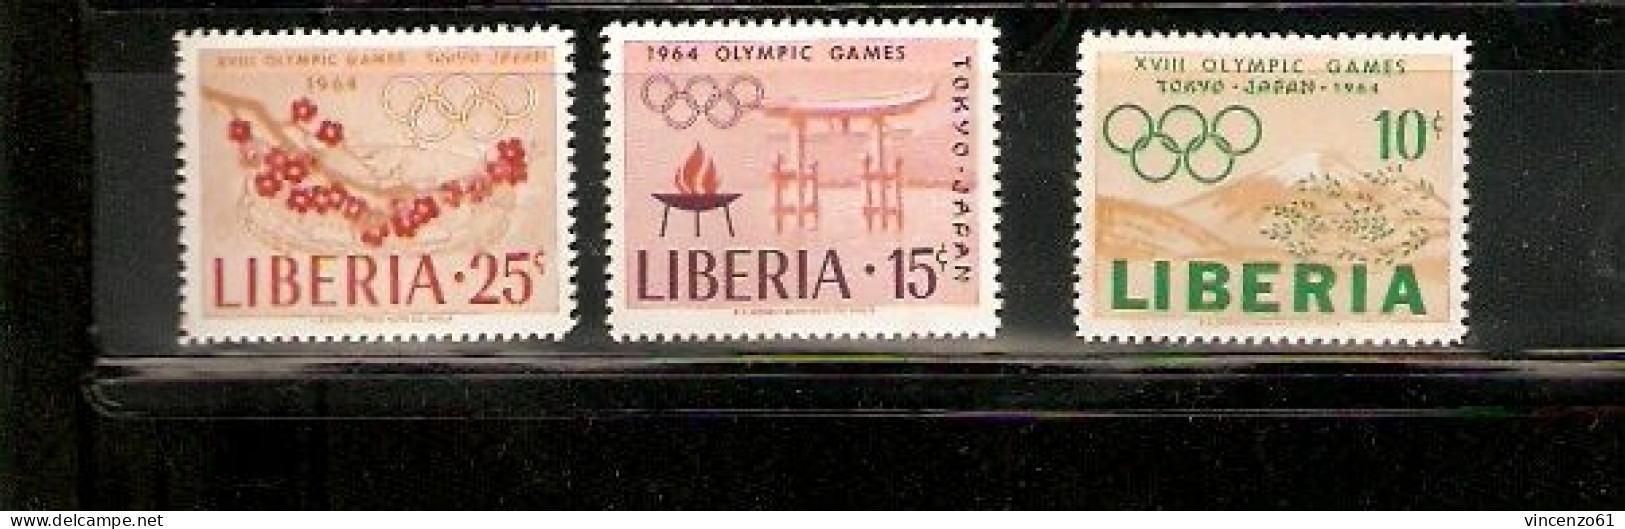 LIBERIA TOKIO OLIMPIC GAME 1964 - Zomer 1964: Tokyo